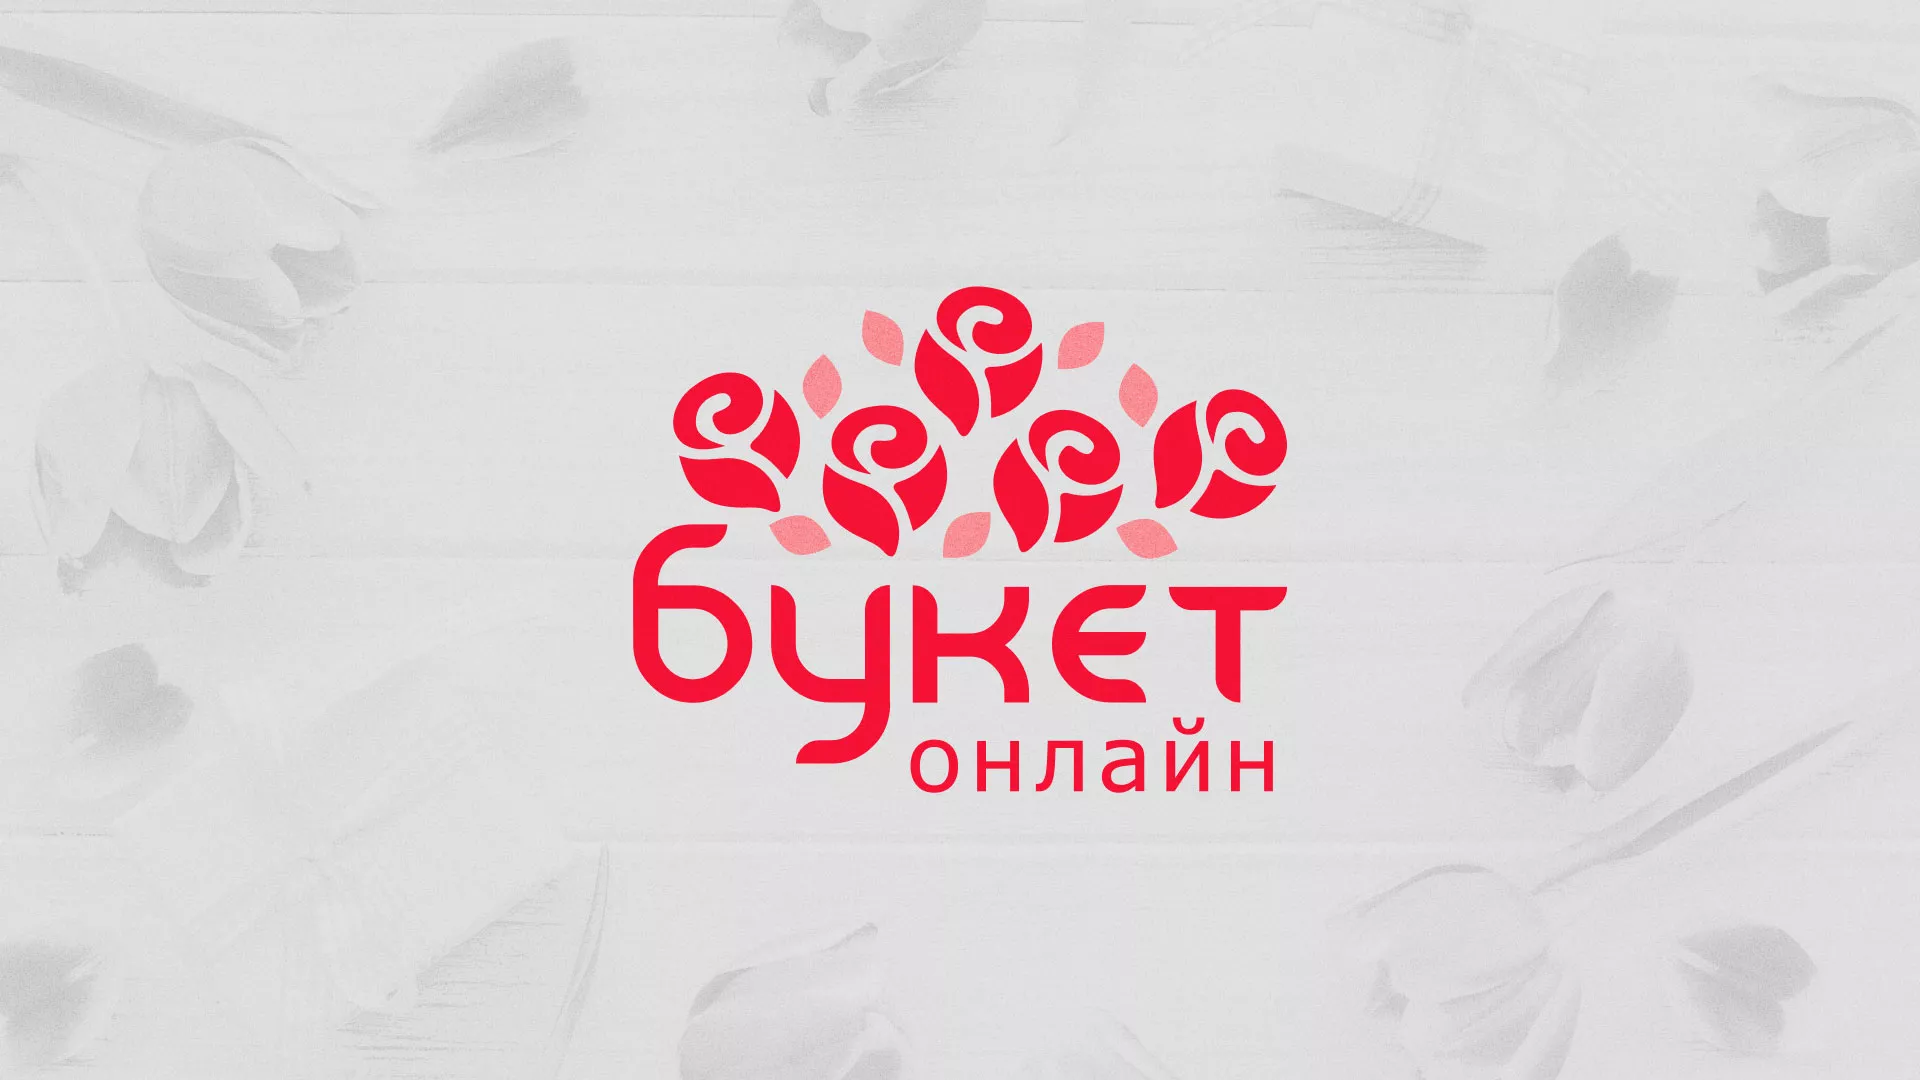 Создание интернет-магазина «Букет-онлайн» по цветам в Сковородино